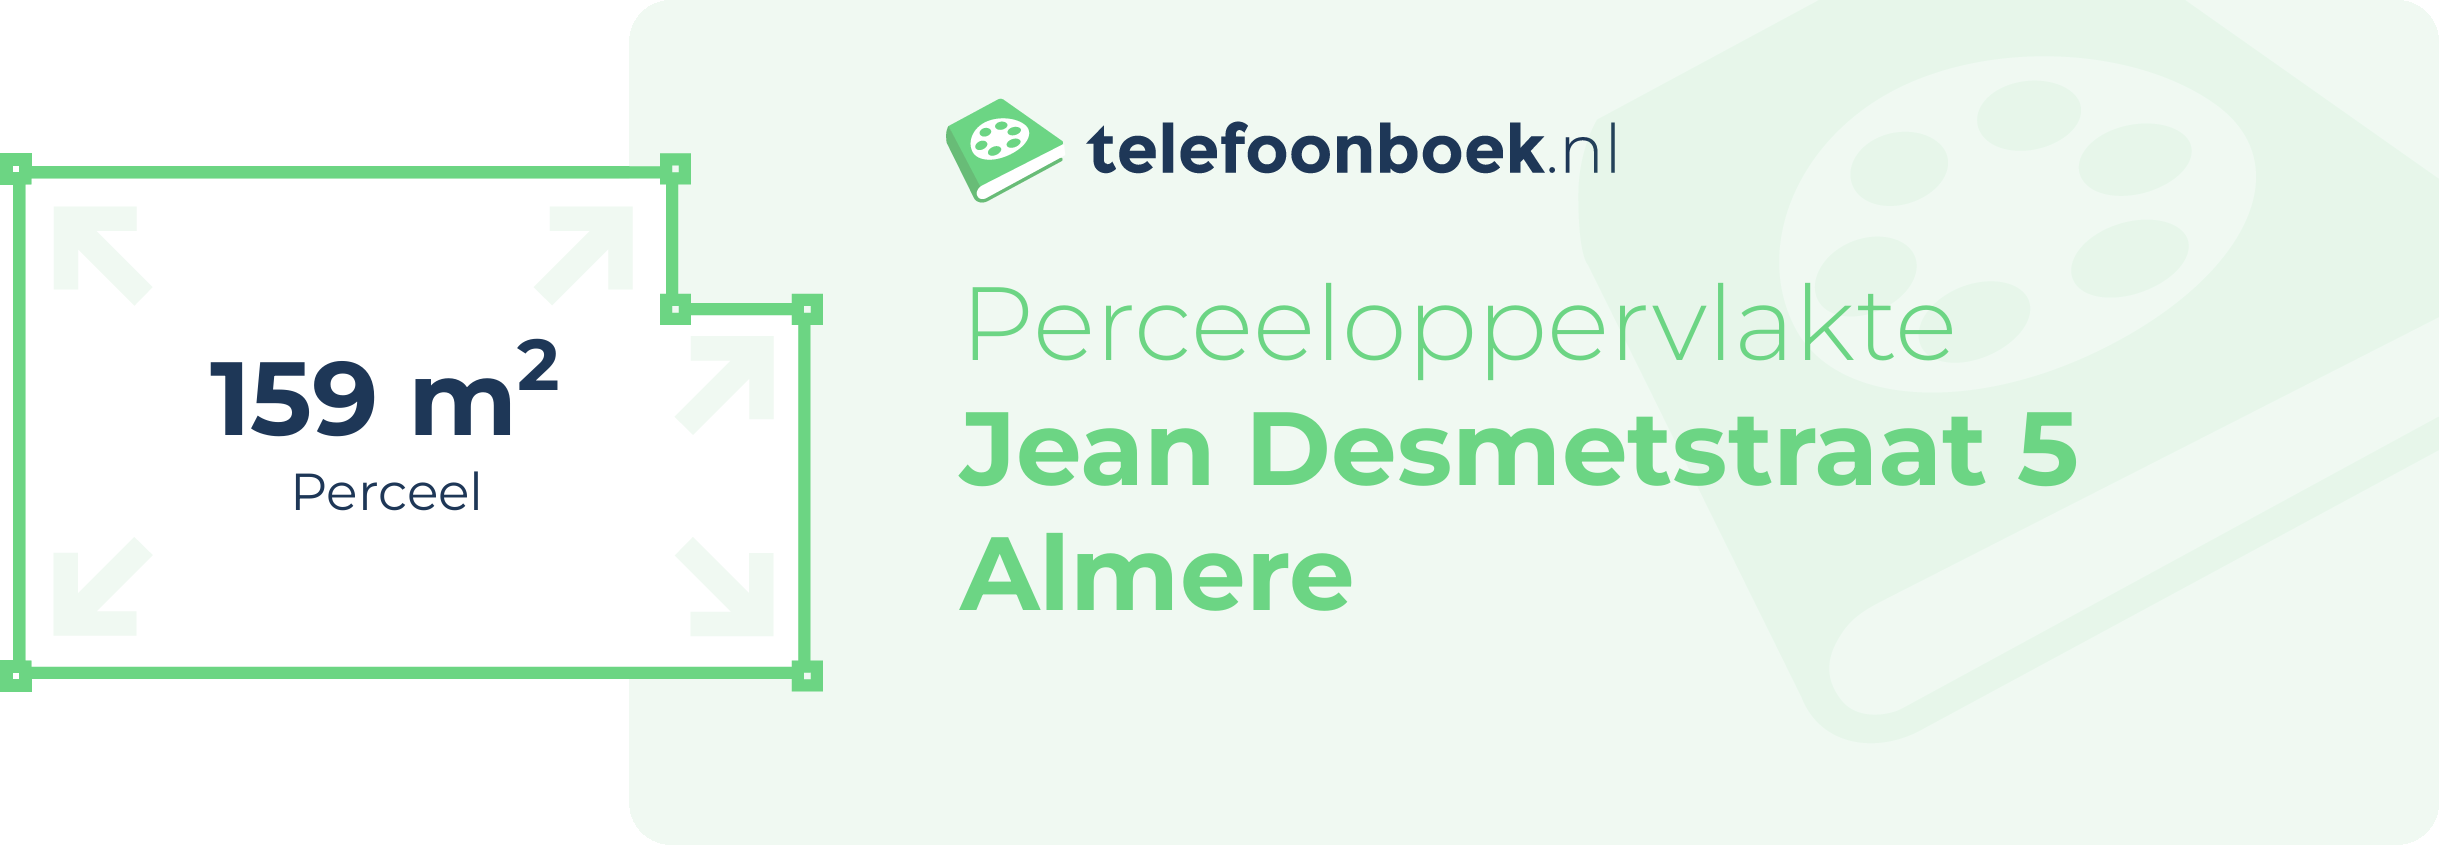 Perceeloppervlakte Jean Desmetstraat 5 Almere